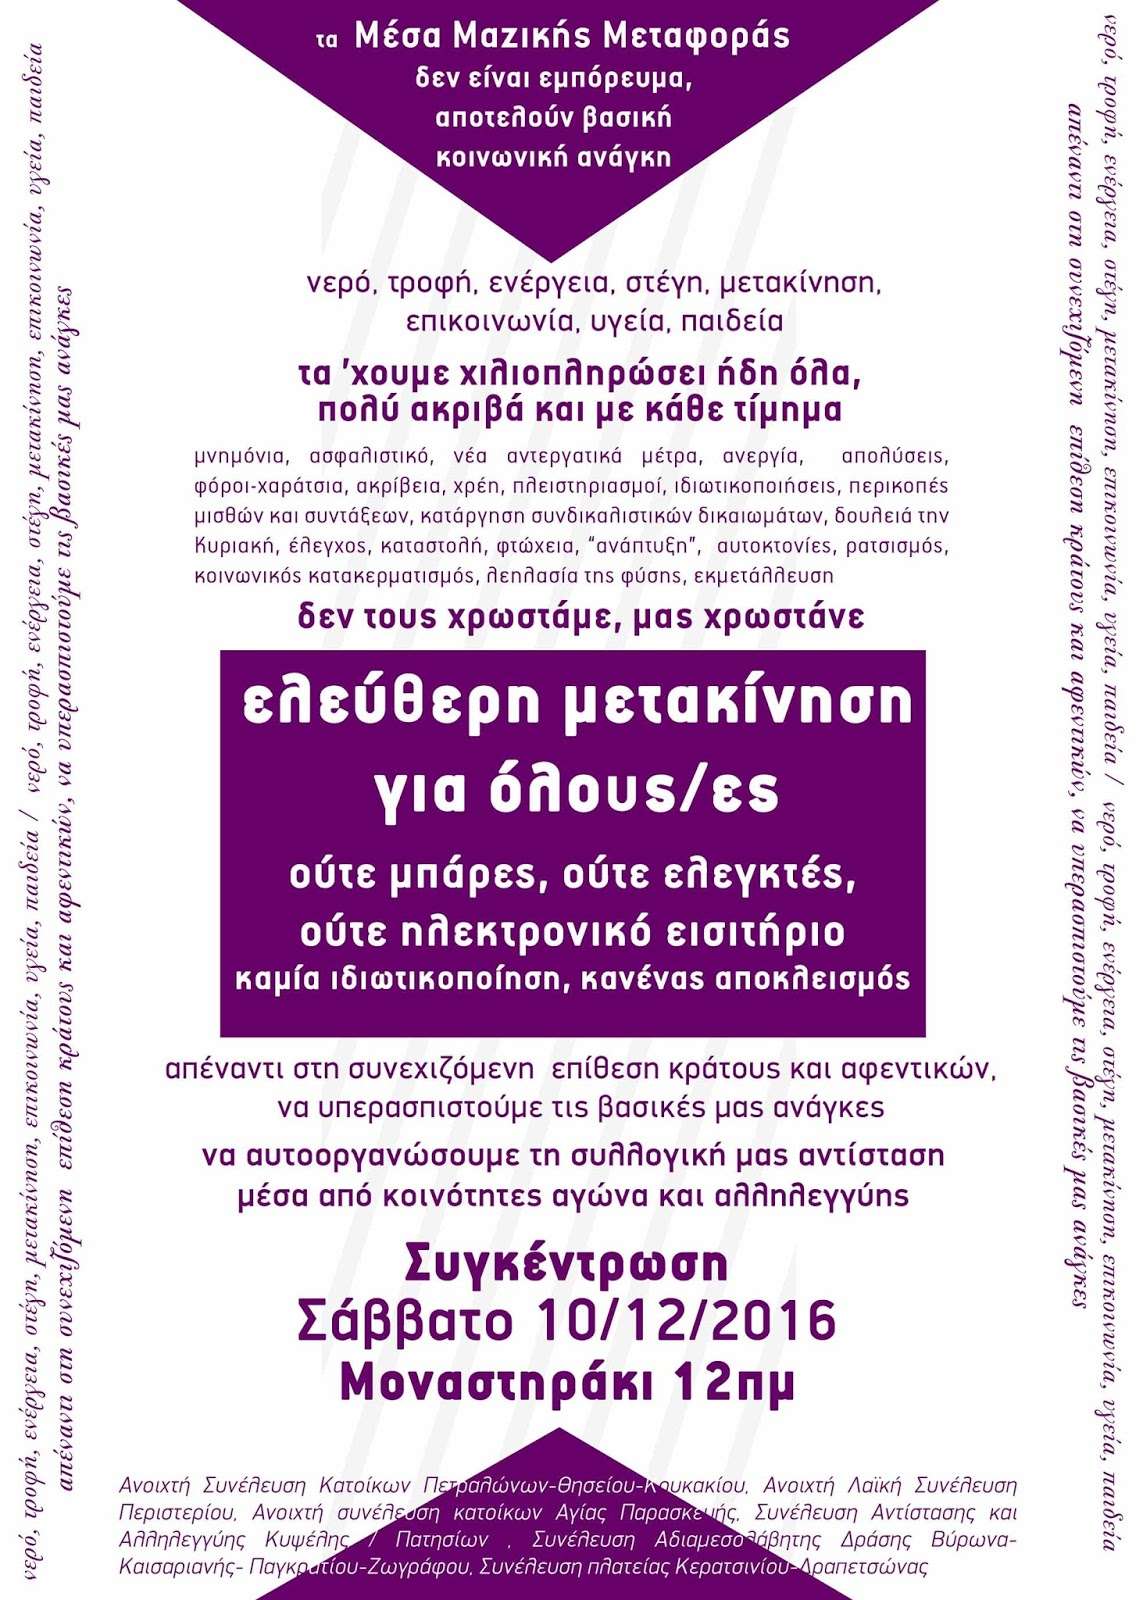 Αθήνα: Συγκέντρωση για τις ελεύθερες μετακινήσεις στα ΜΜΜ [Σάββατο 10/12, 12:00, Μοναστηράκι]